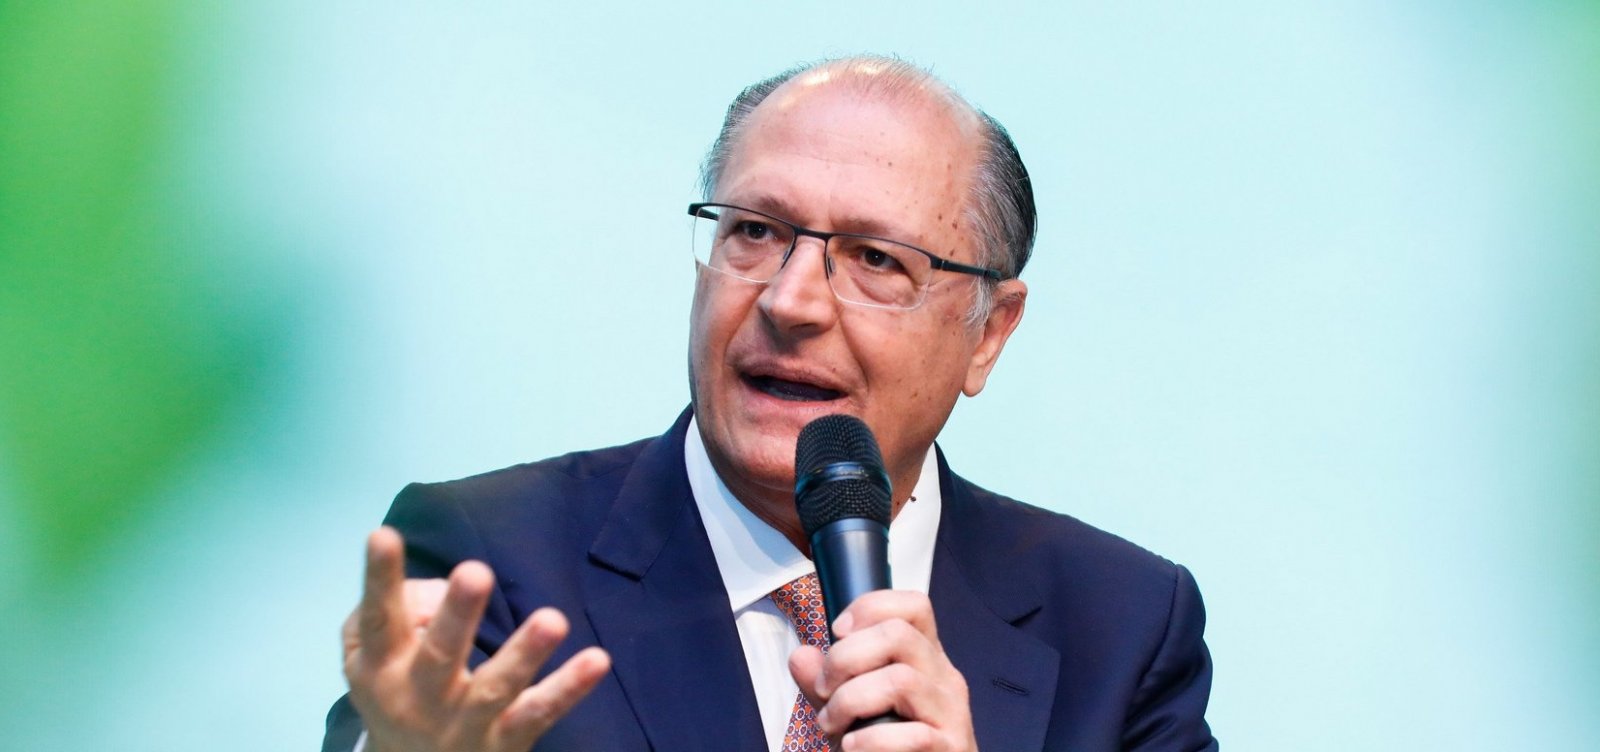 ‘Não há razão para abrir mão da candidatura’, diz Alckmin